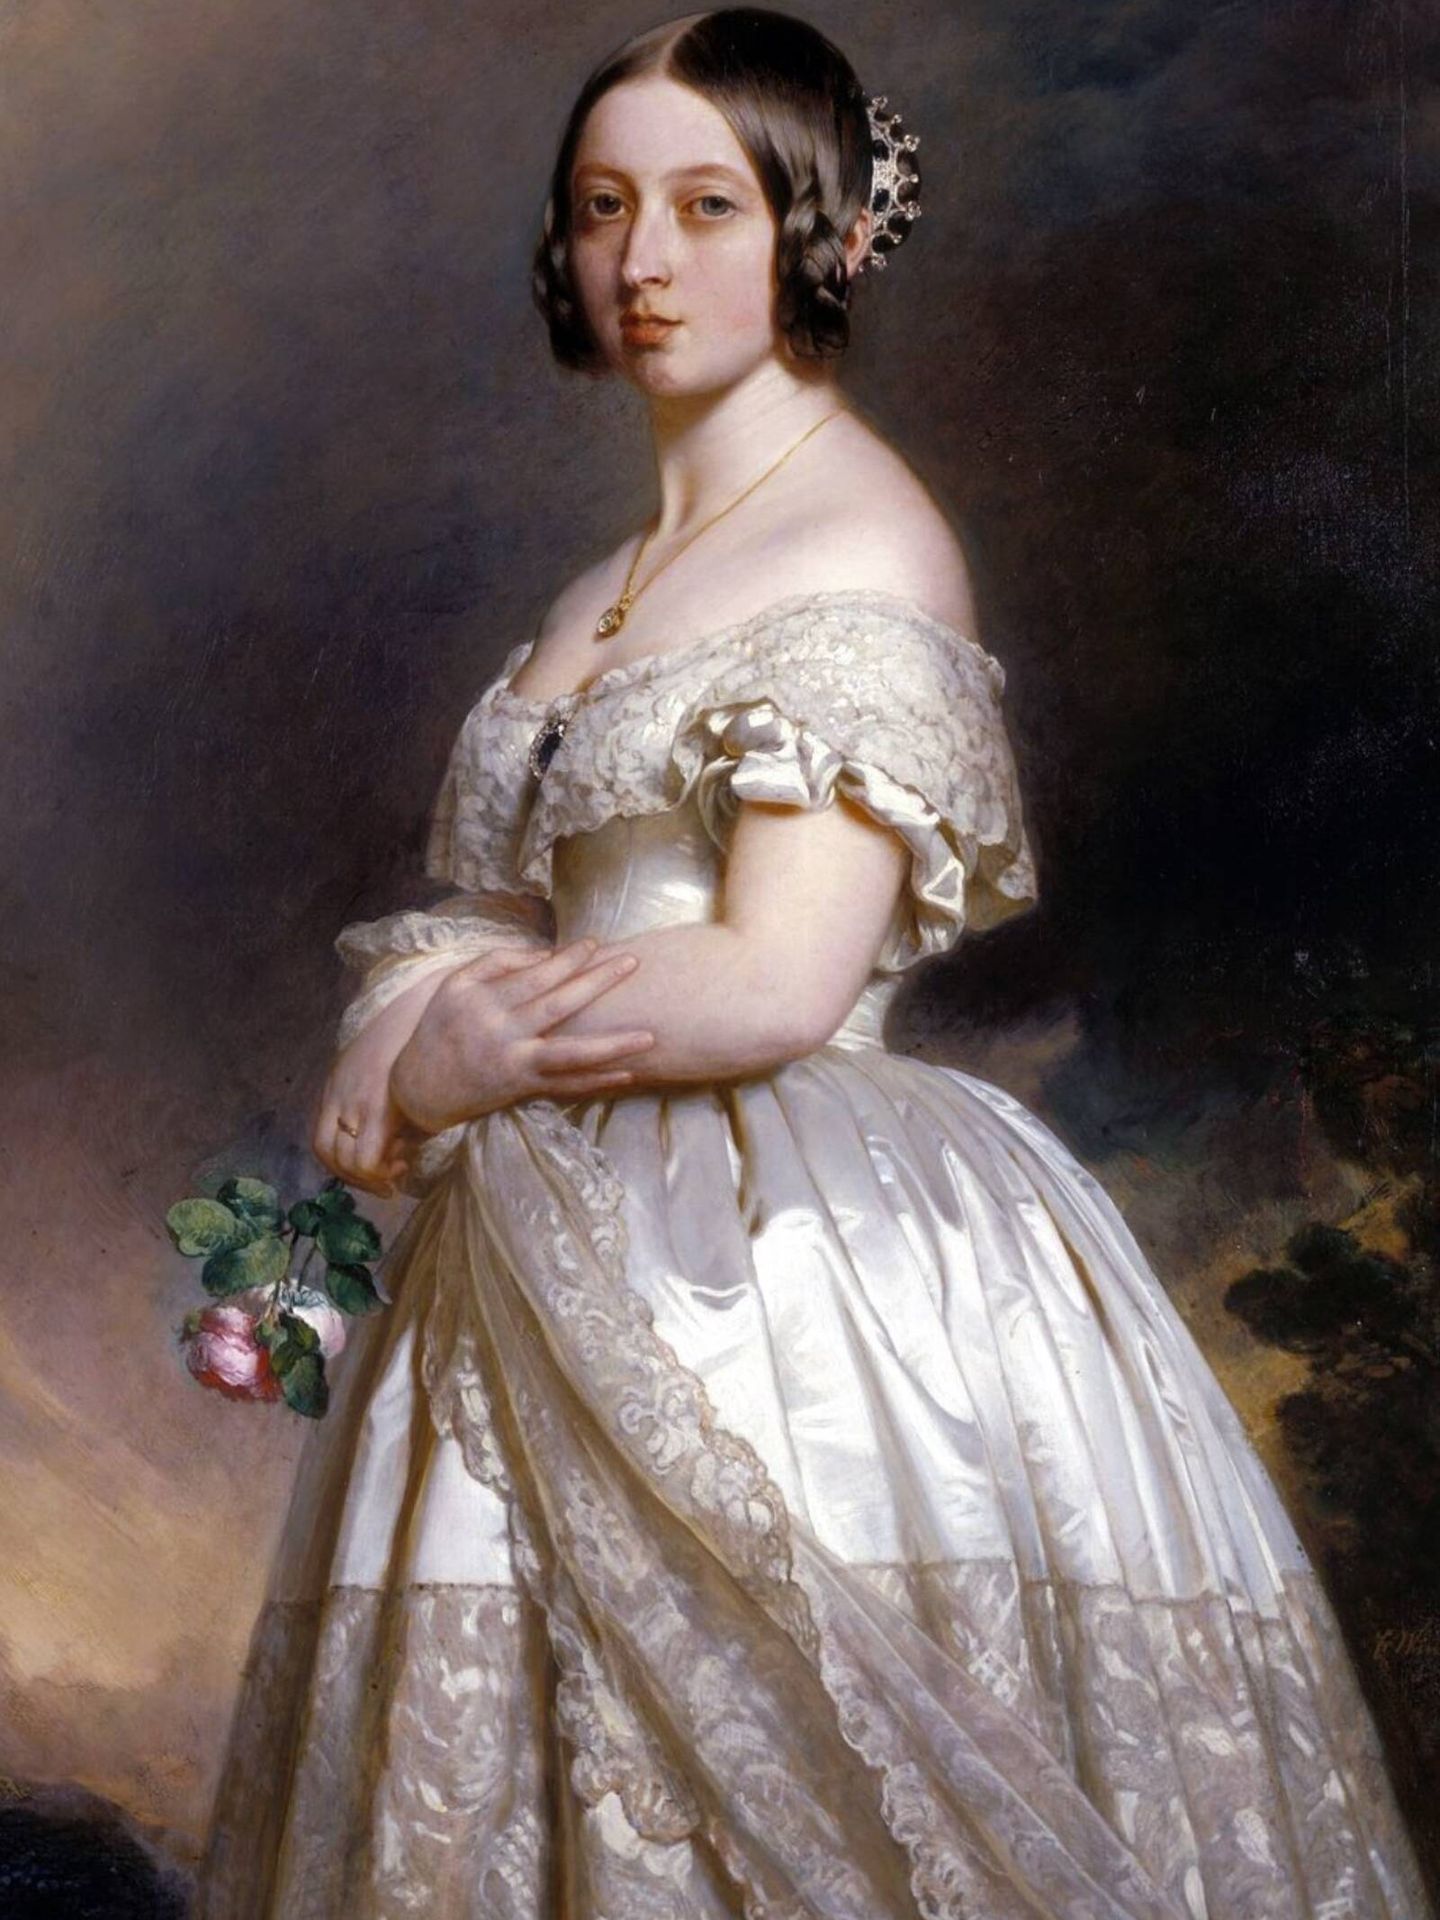 La reina Victoria de Inglaterra, la primera influencer de bodas, en un retrato de Franz Xaver Winterhalter. (Royal Collection Trust/Cortesía)